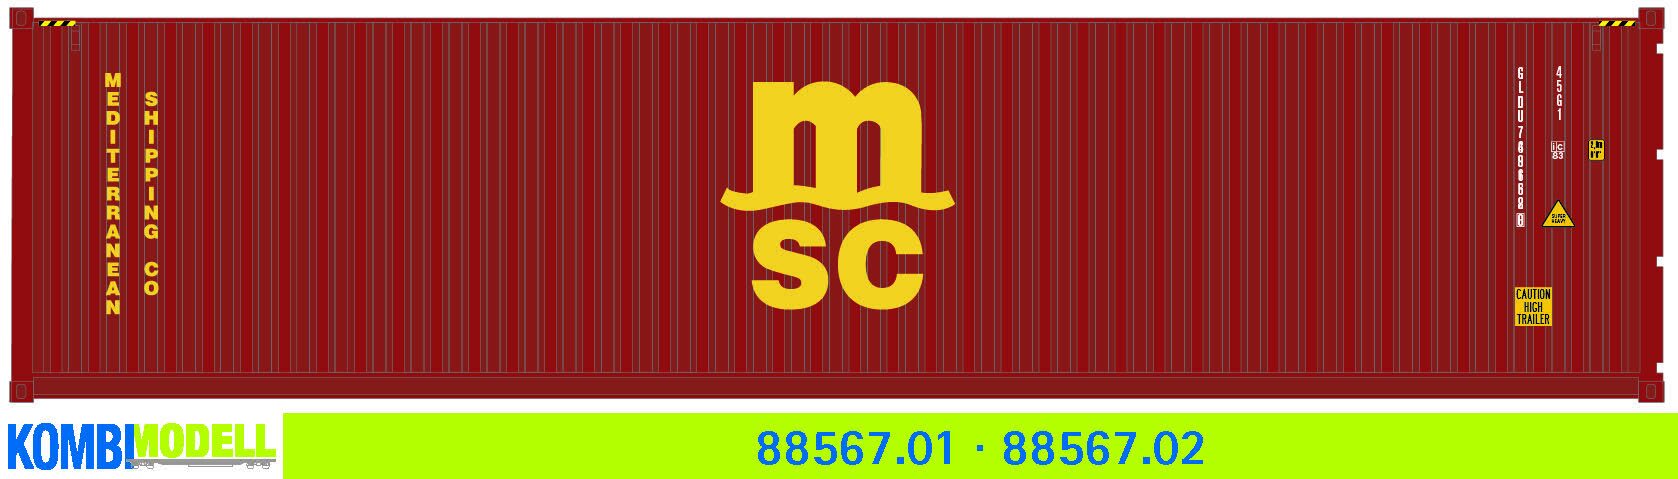 Kombimodell 88567.02 Ct 40' (45G1) »MSC« (braun) ═ SoSe 